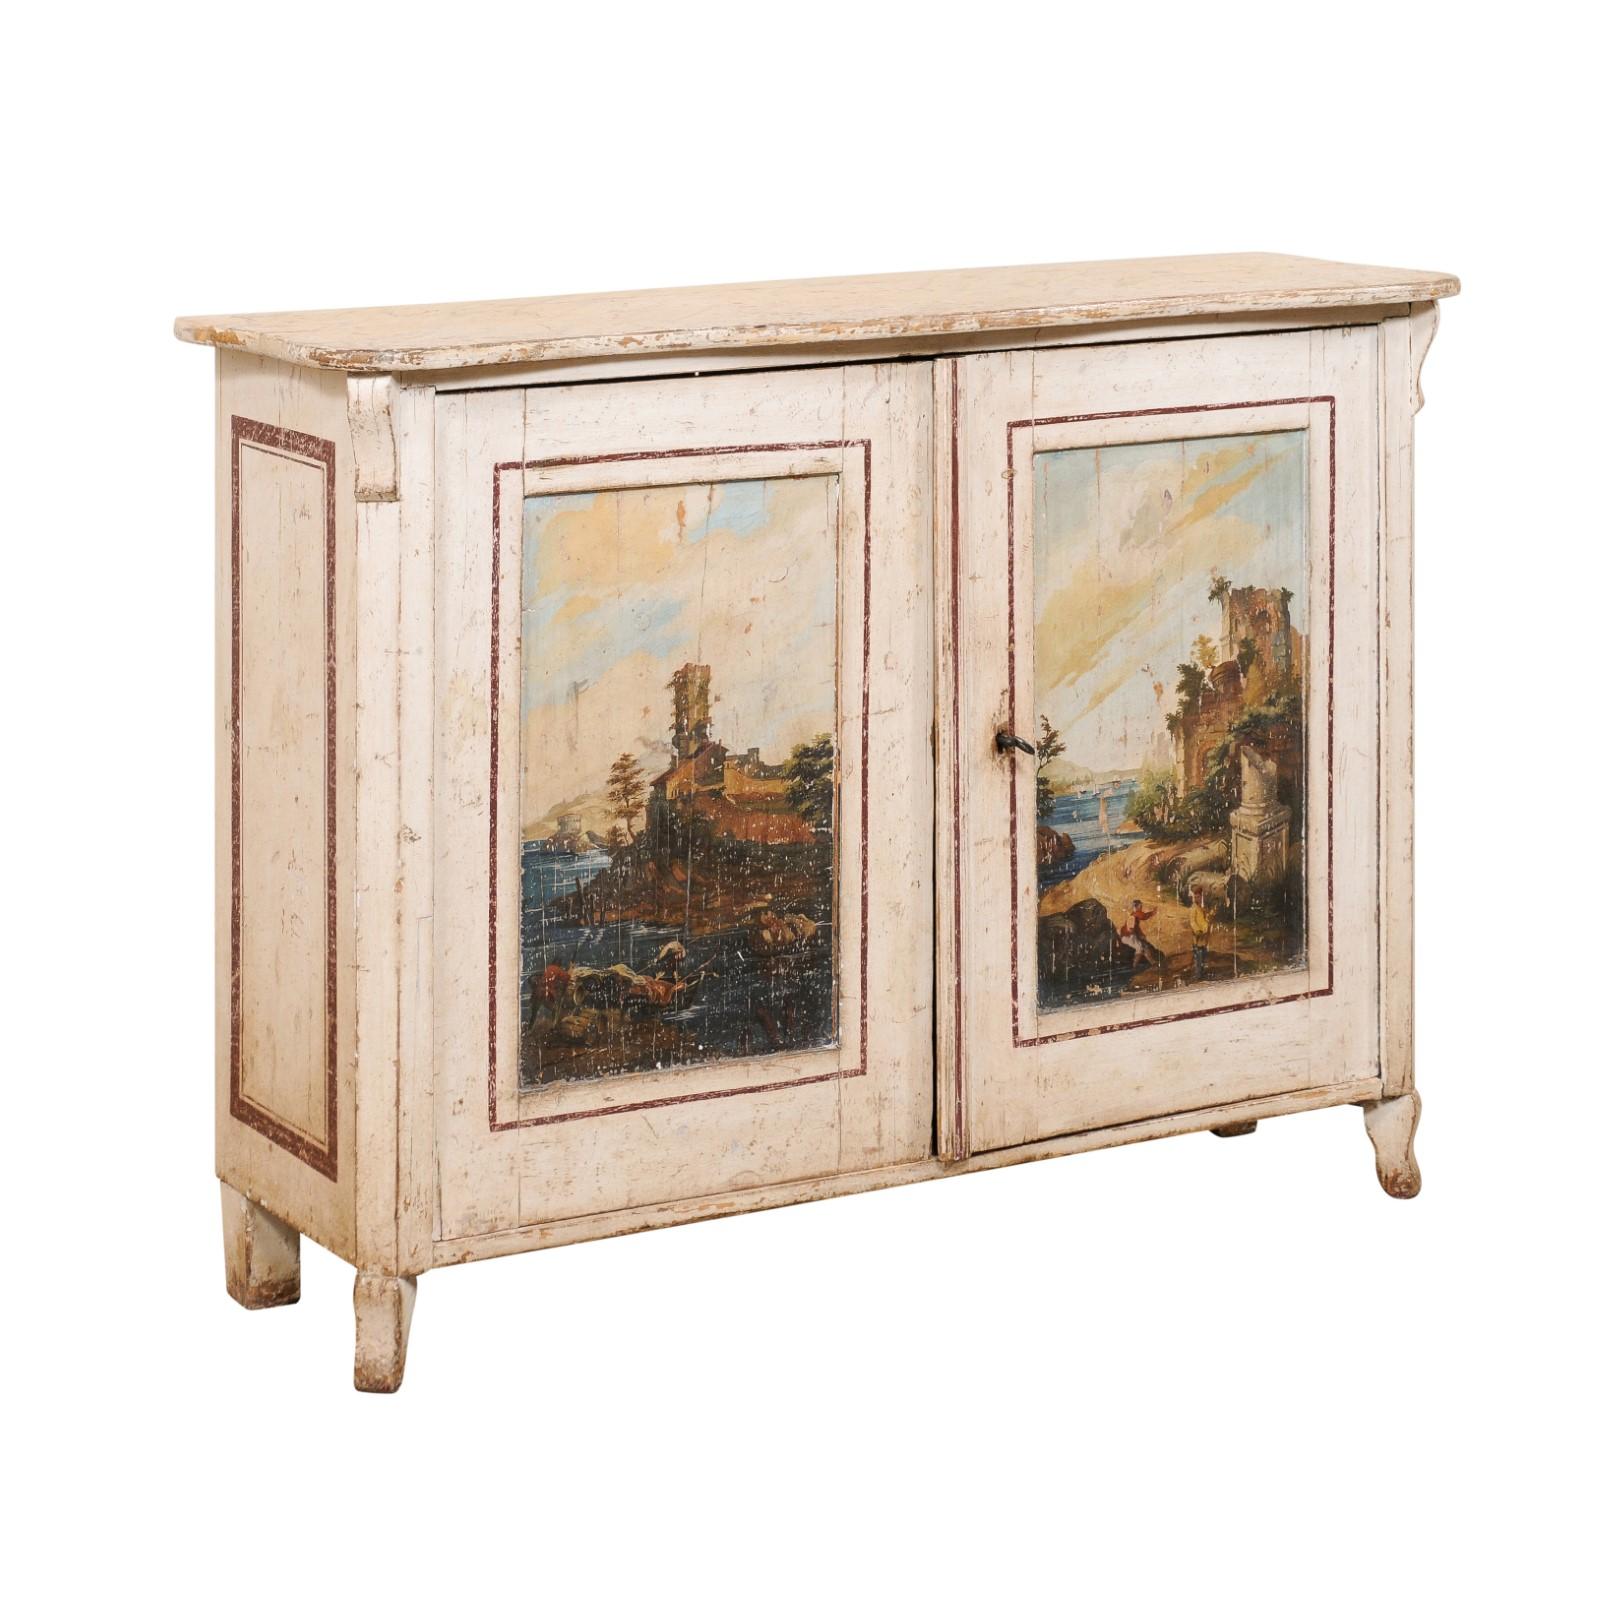 Une armoire italienne à deux portes avec une finition artistique peinte à la main, du 19ème siècle. Ce meuble ancien d'Italie présente un plateau de forme rectangulaire avec un bord frontal légèrement festonné, au sommet d'un coffret équipé d'une